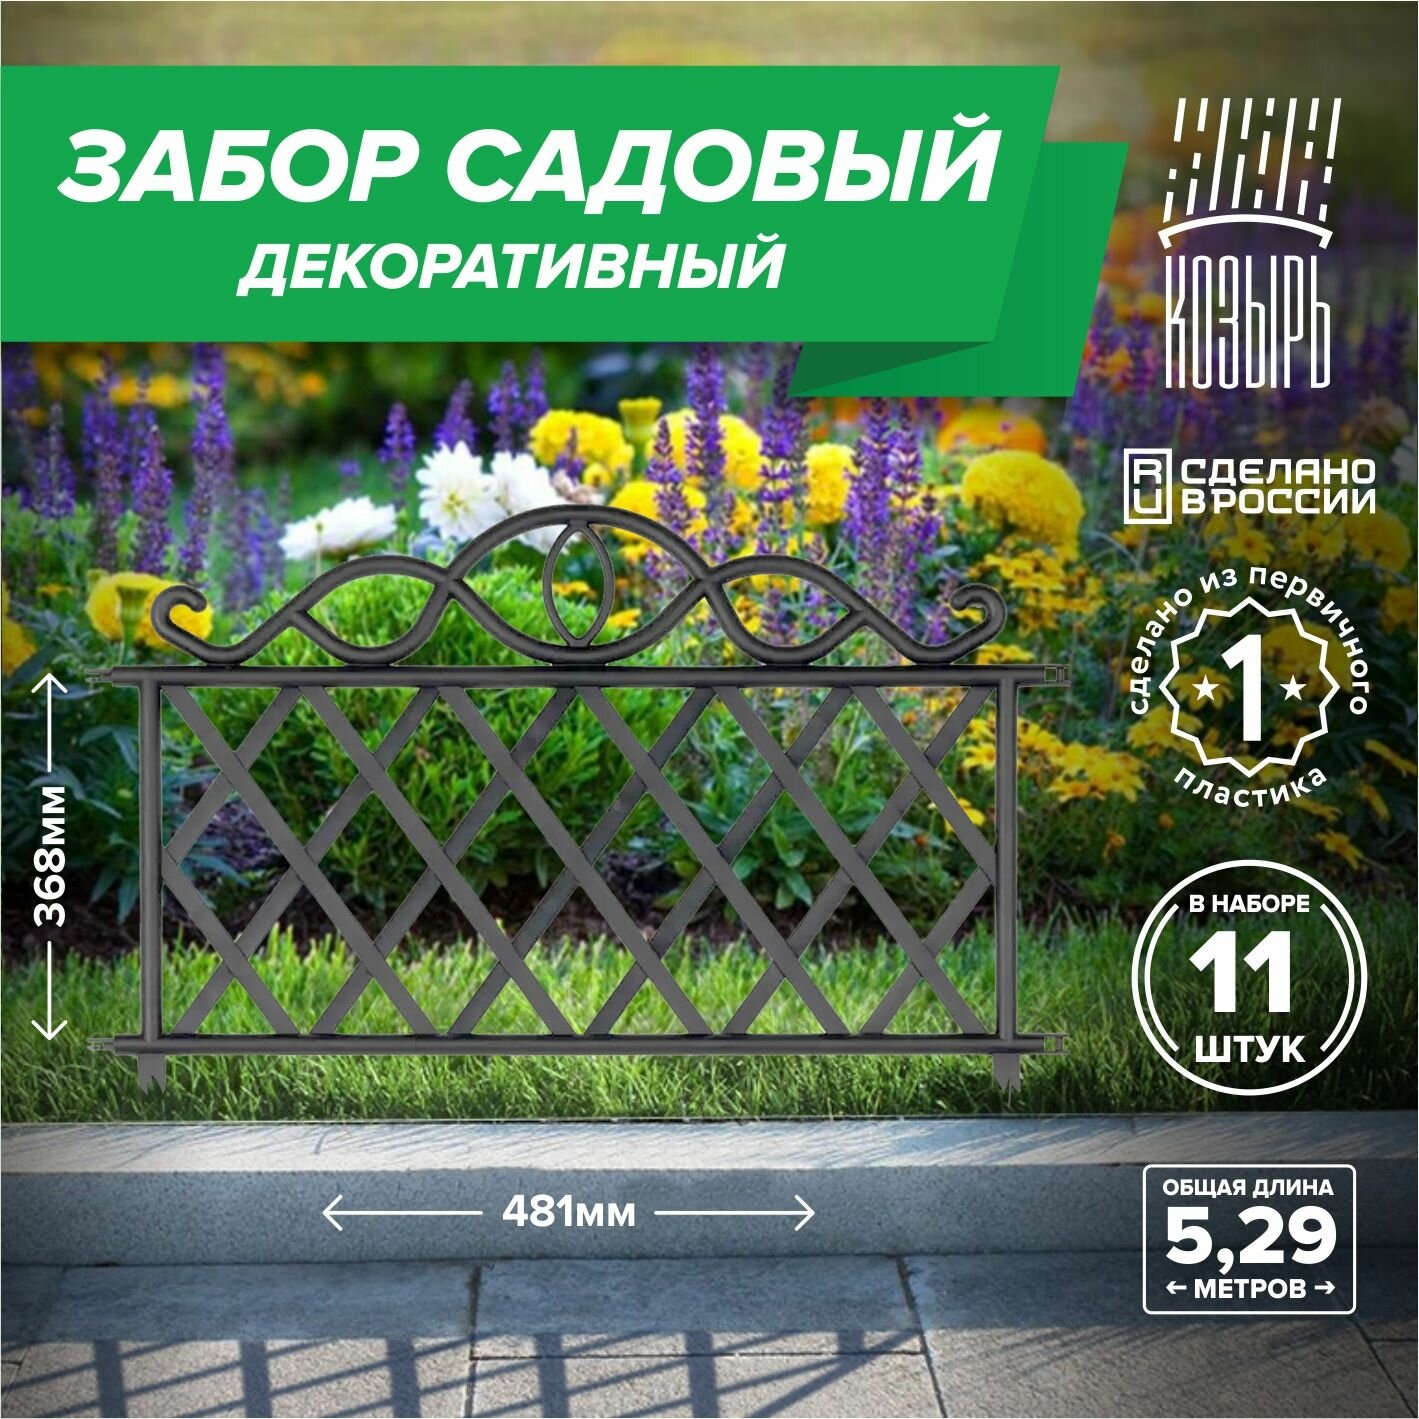 Декоративный садовый забор 481см х 11 шт общая длина: 3367 м ограждение для цветника и клумбы для дачи и сада черный Россия